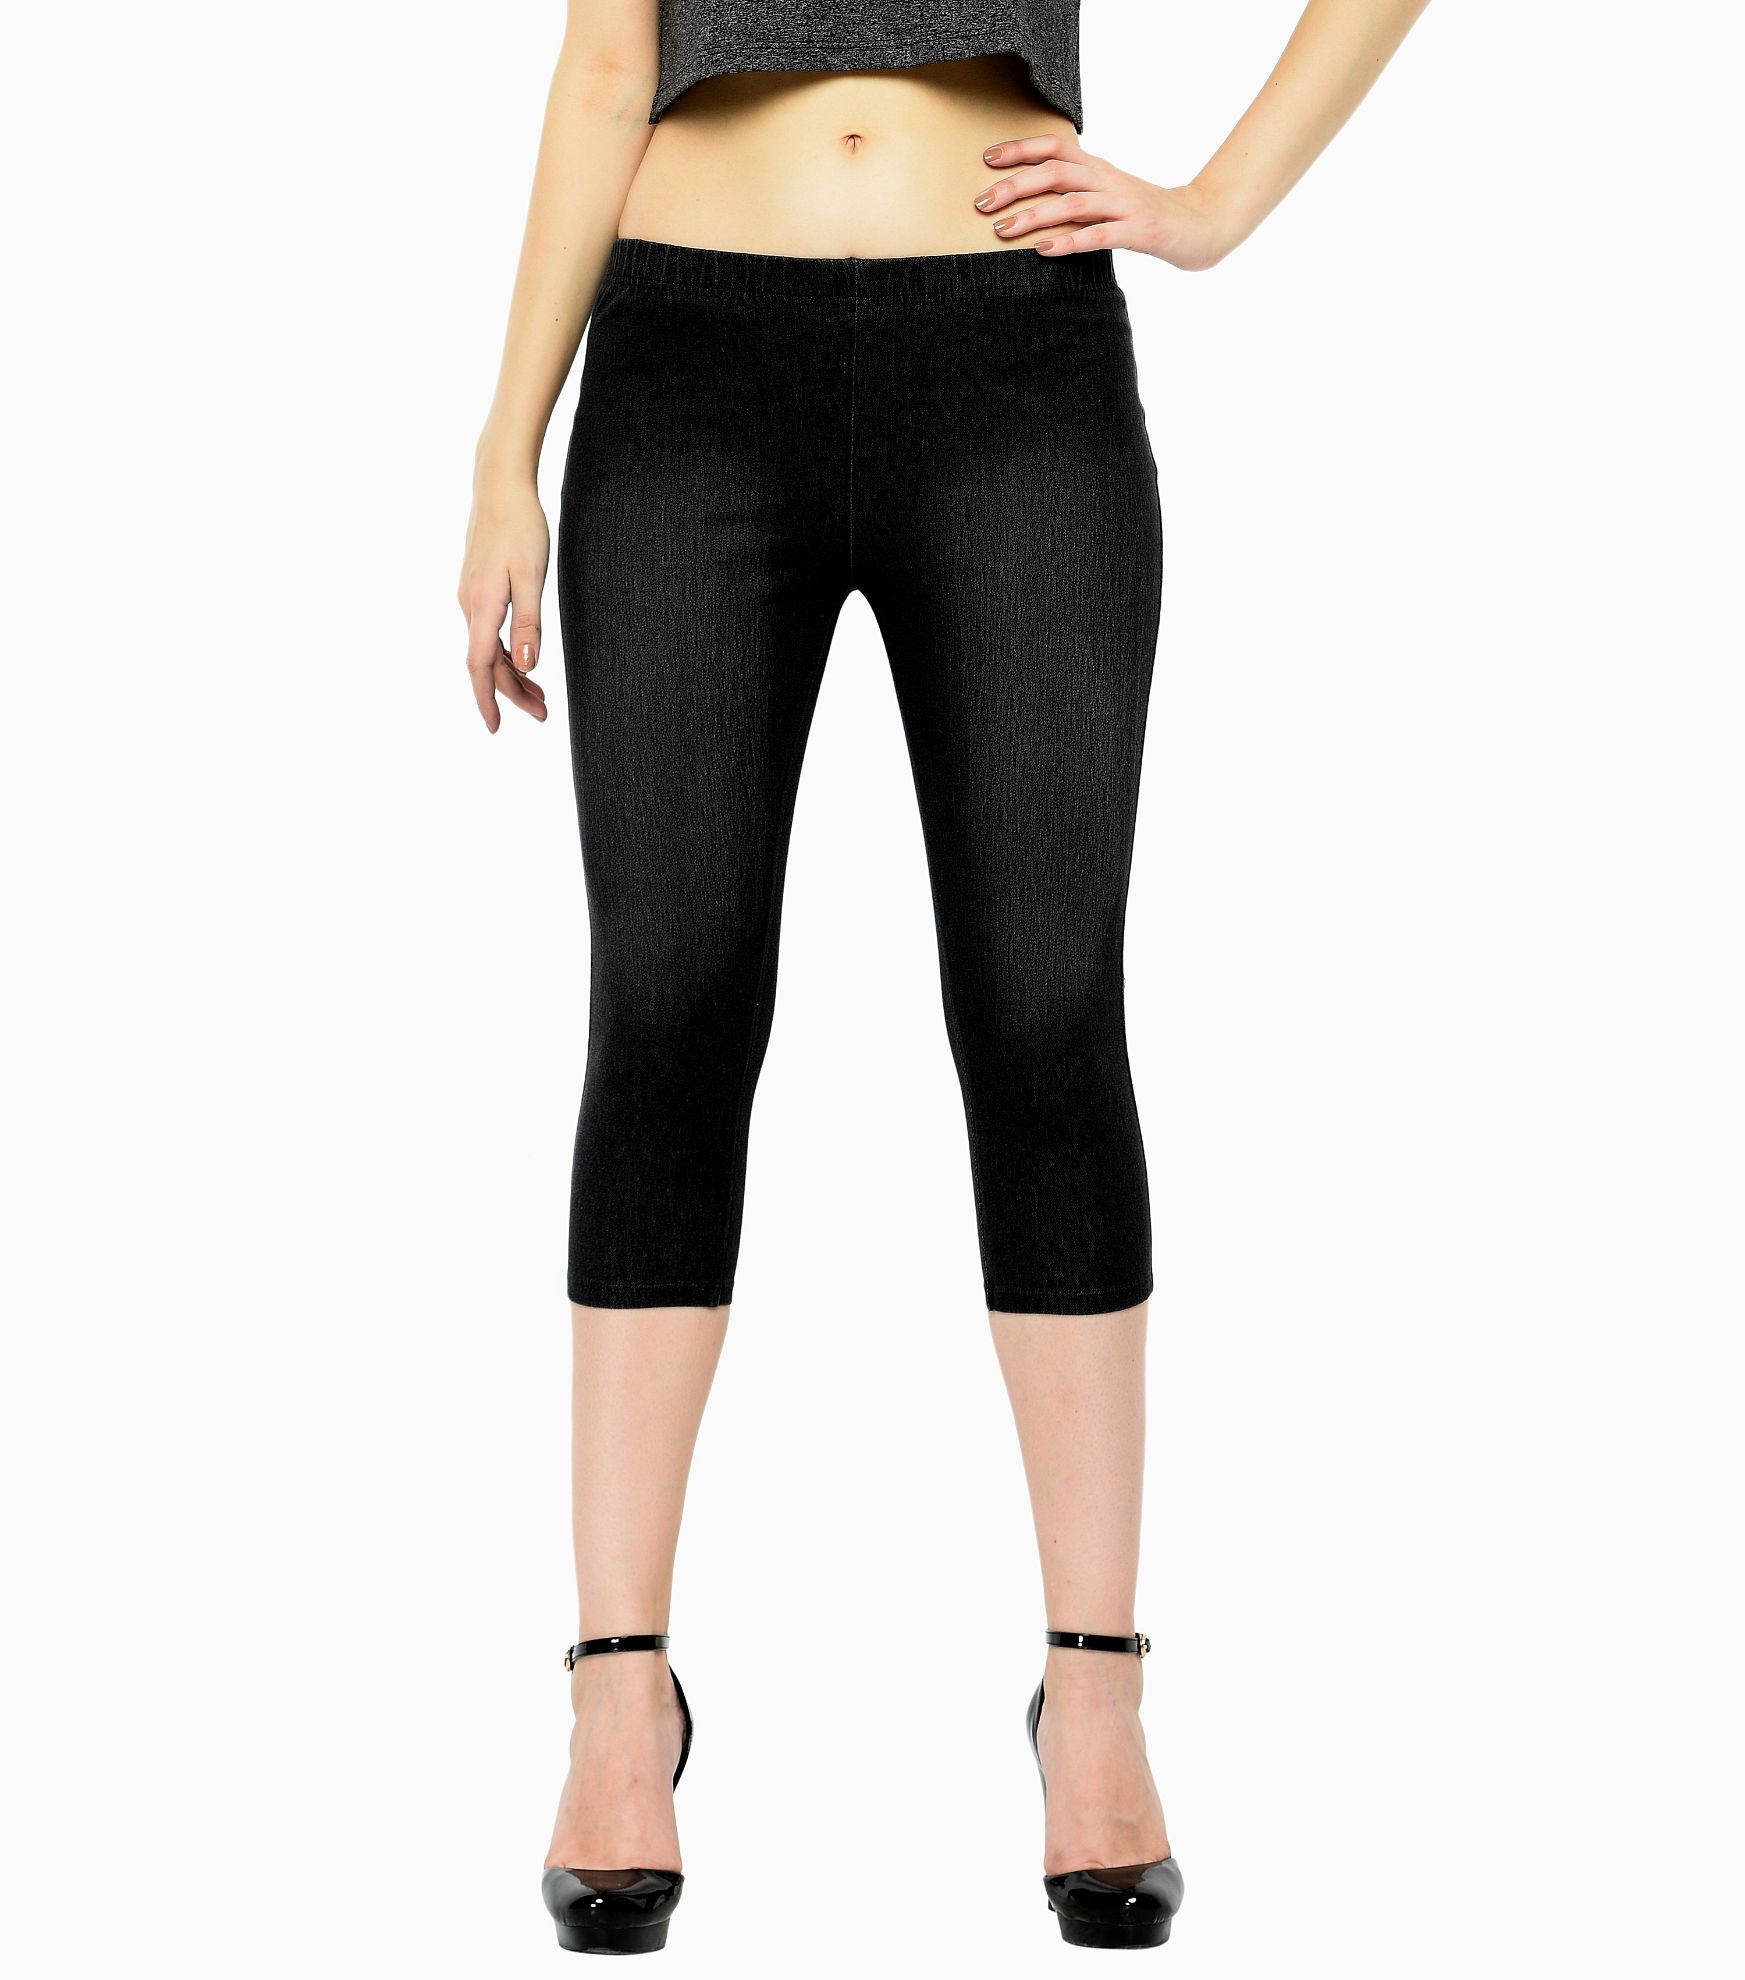 Plus Size Capris For Women - Cotton Capri Pants - Black at Rs